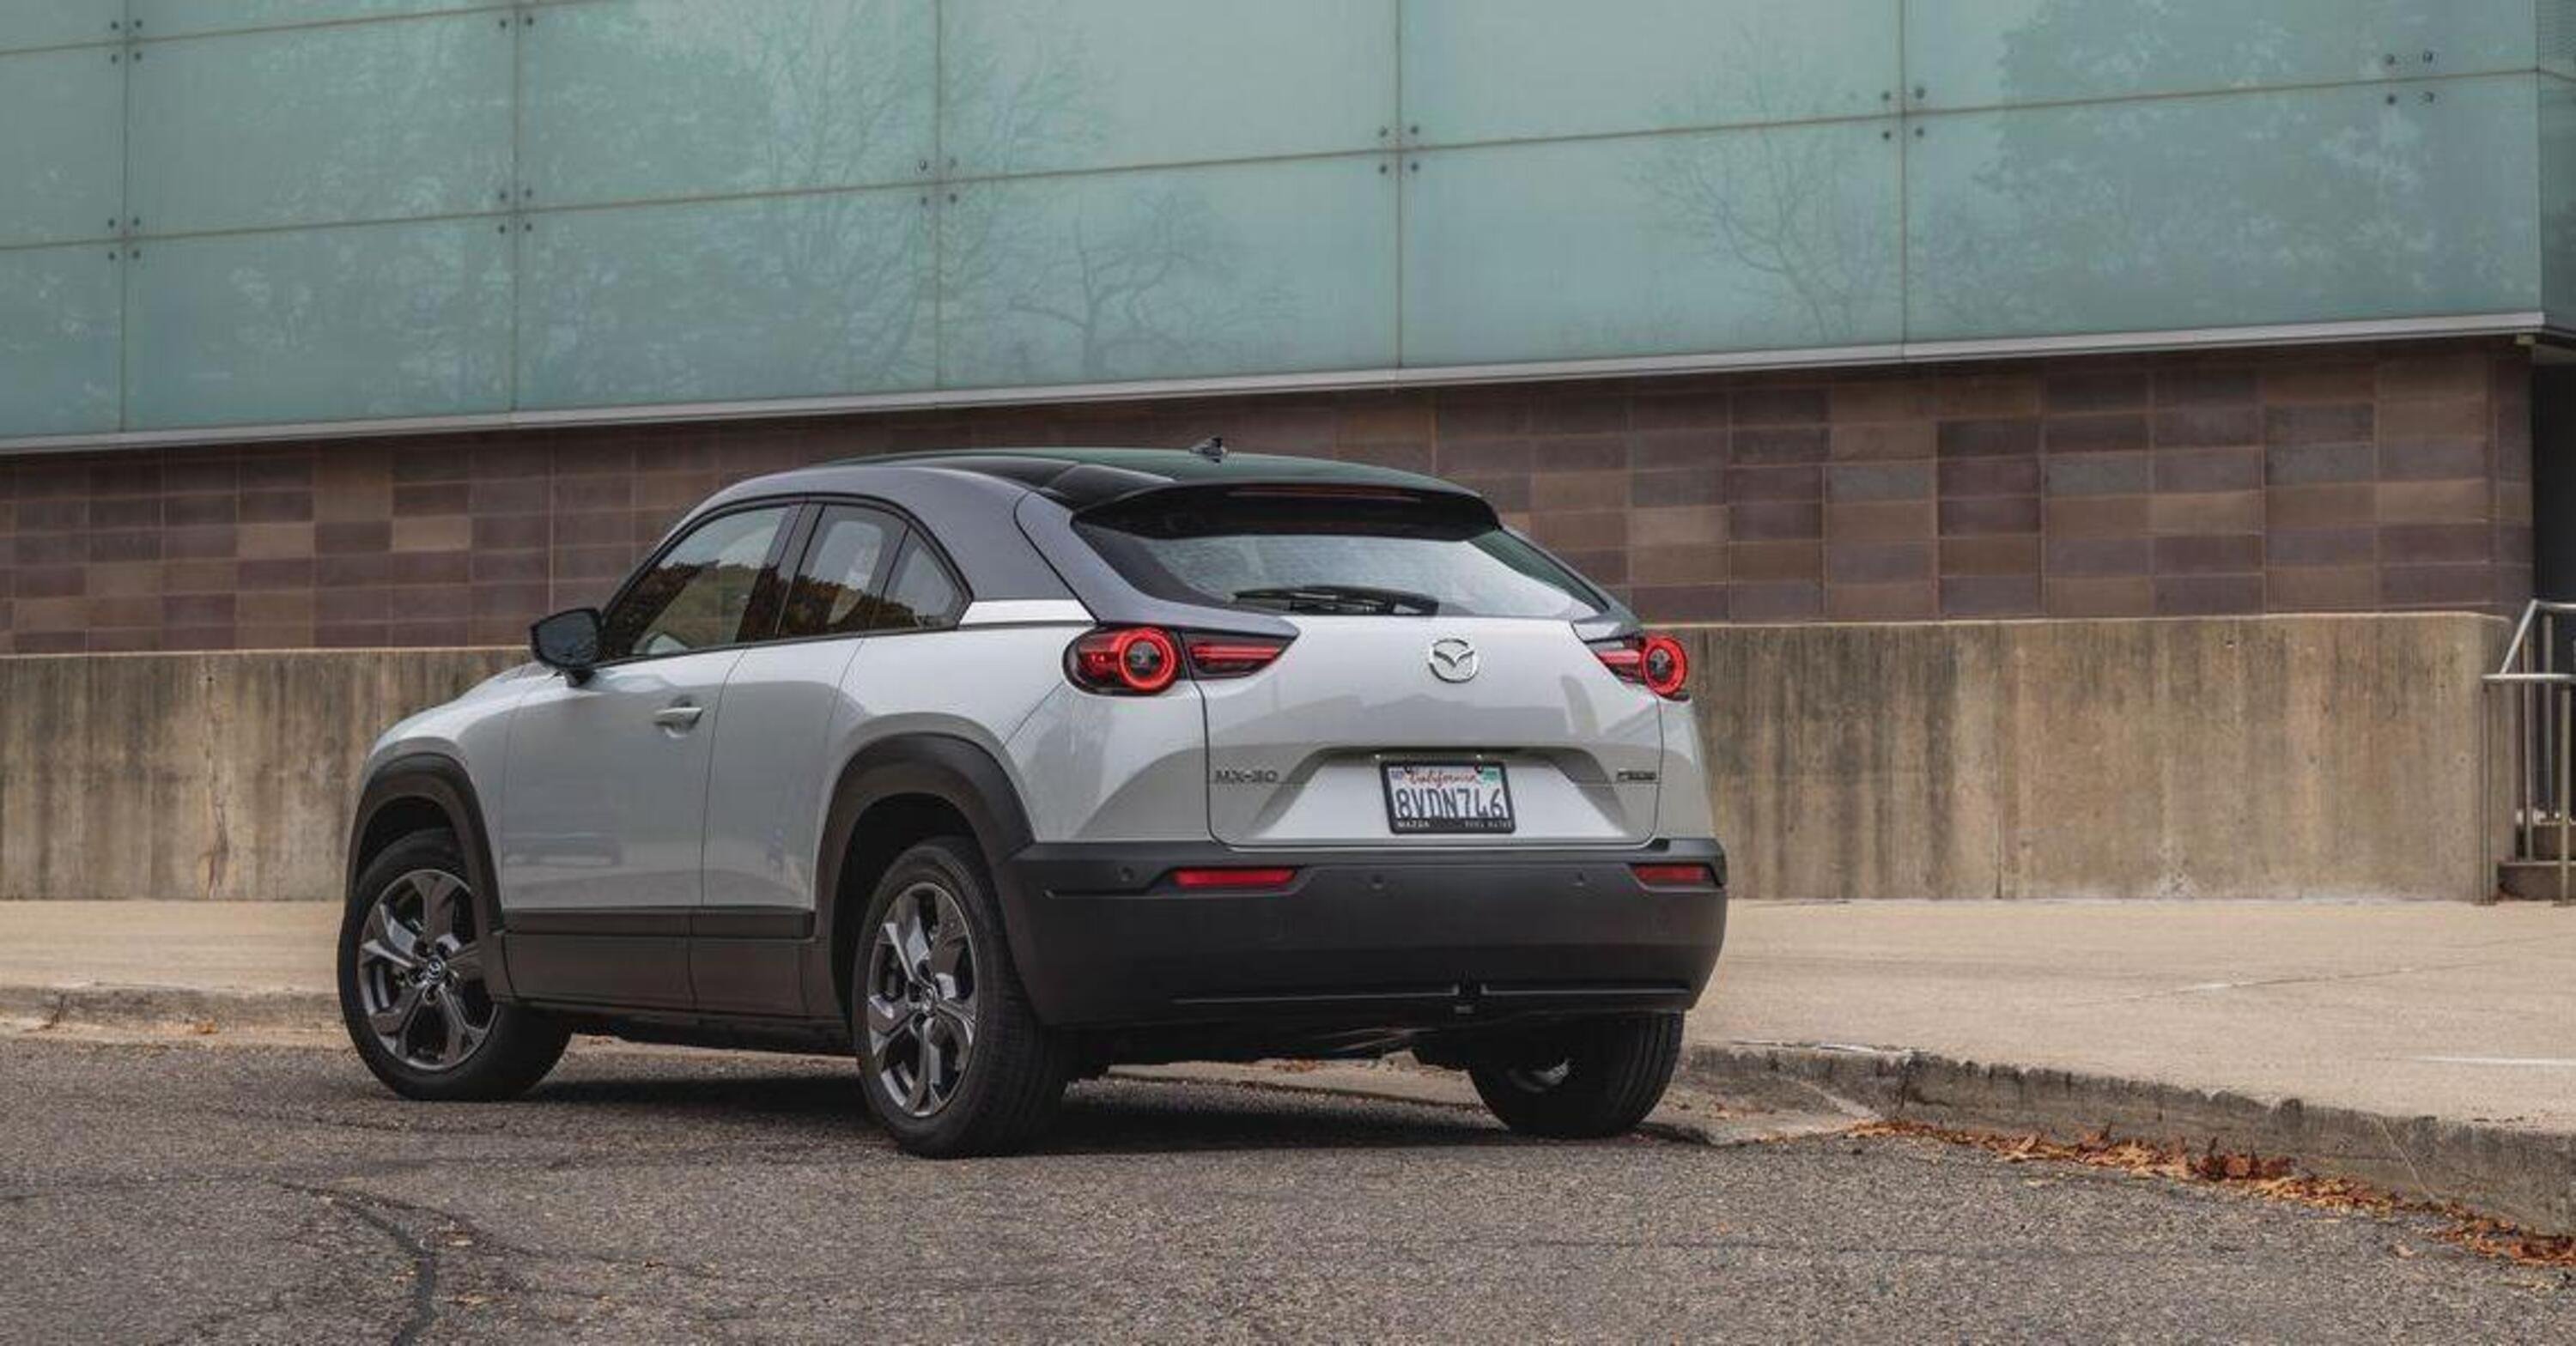 Mazda chiude le vendite della MX-30 in California, poco successo